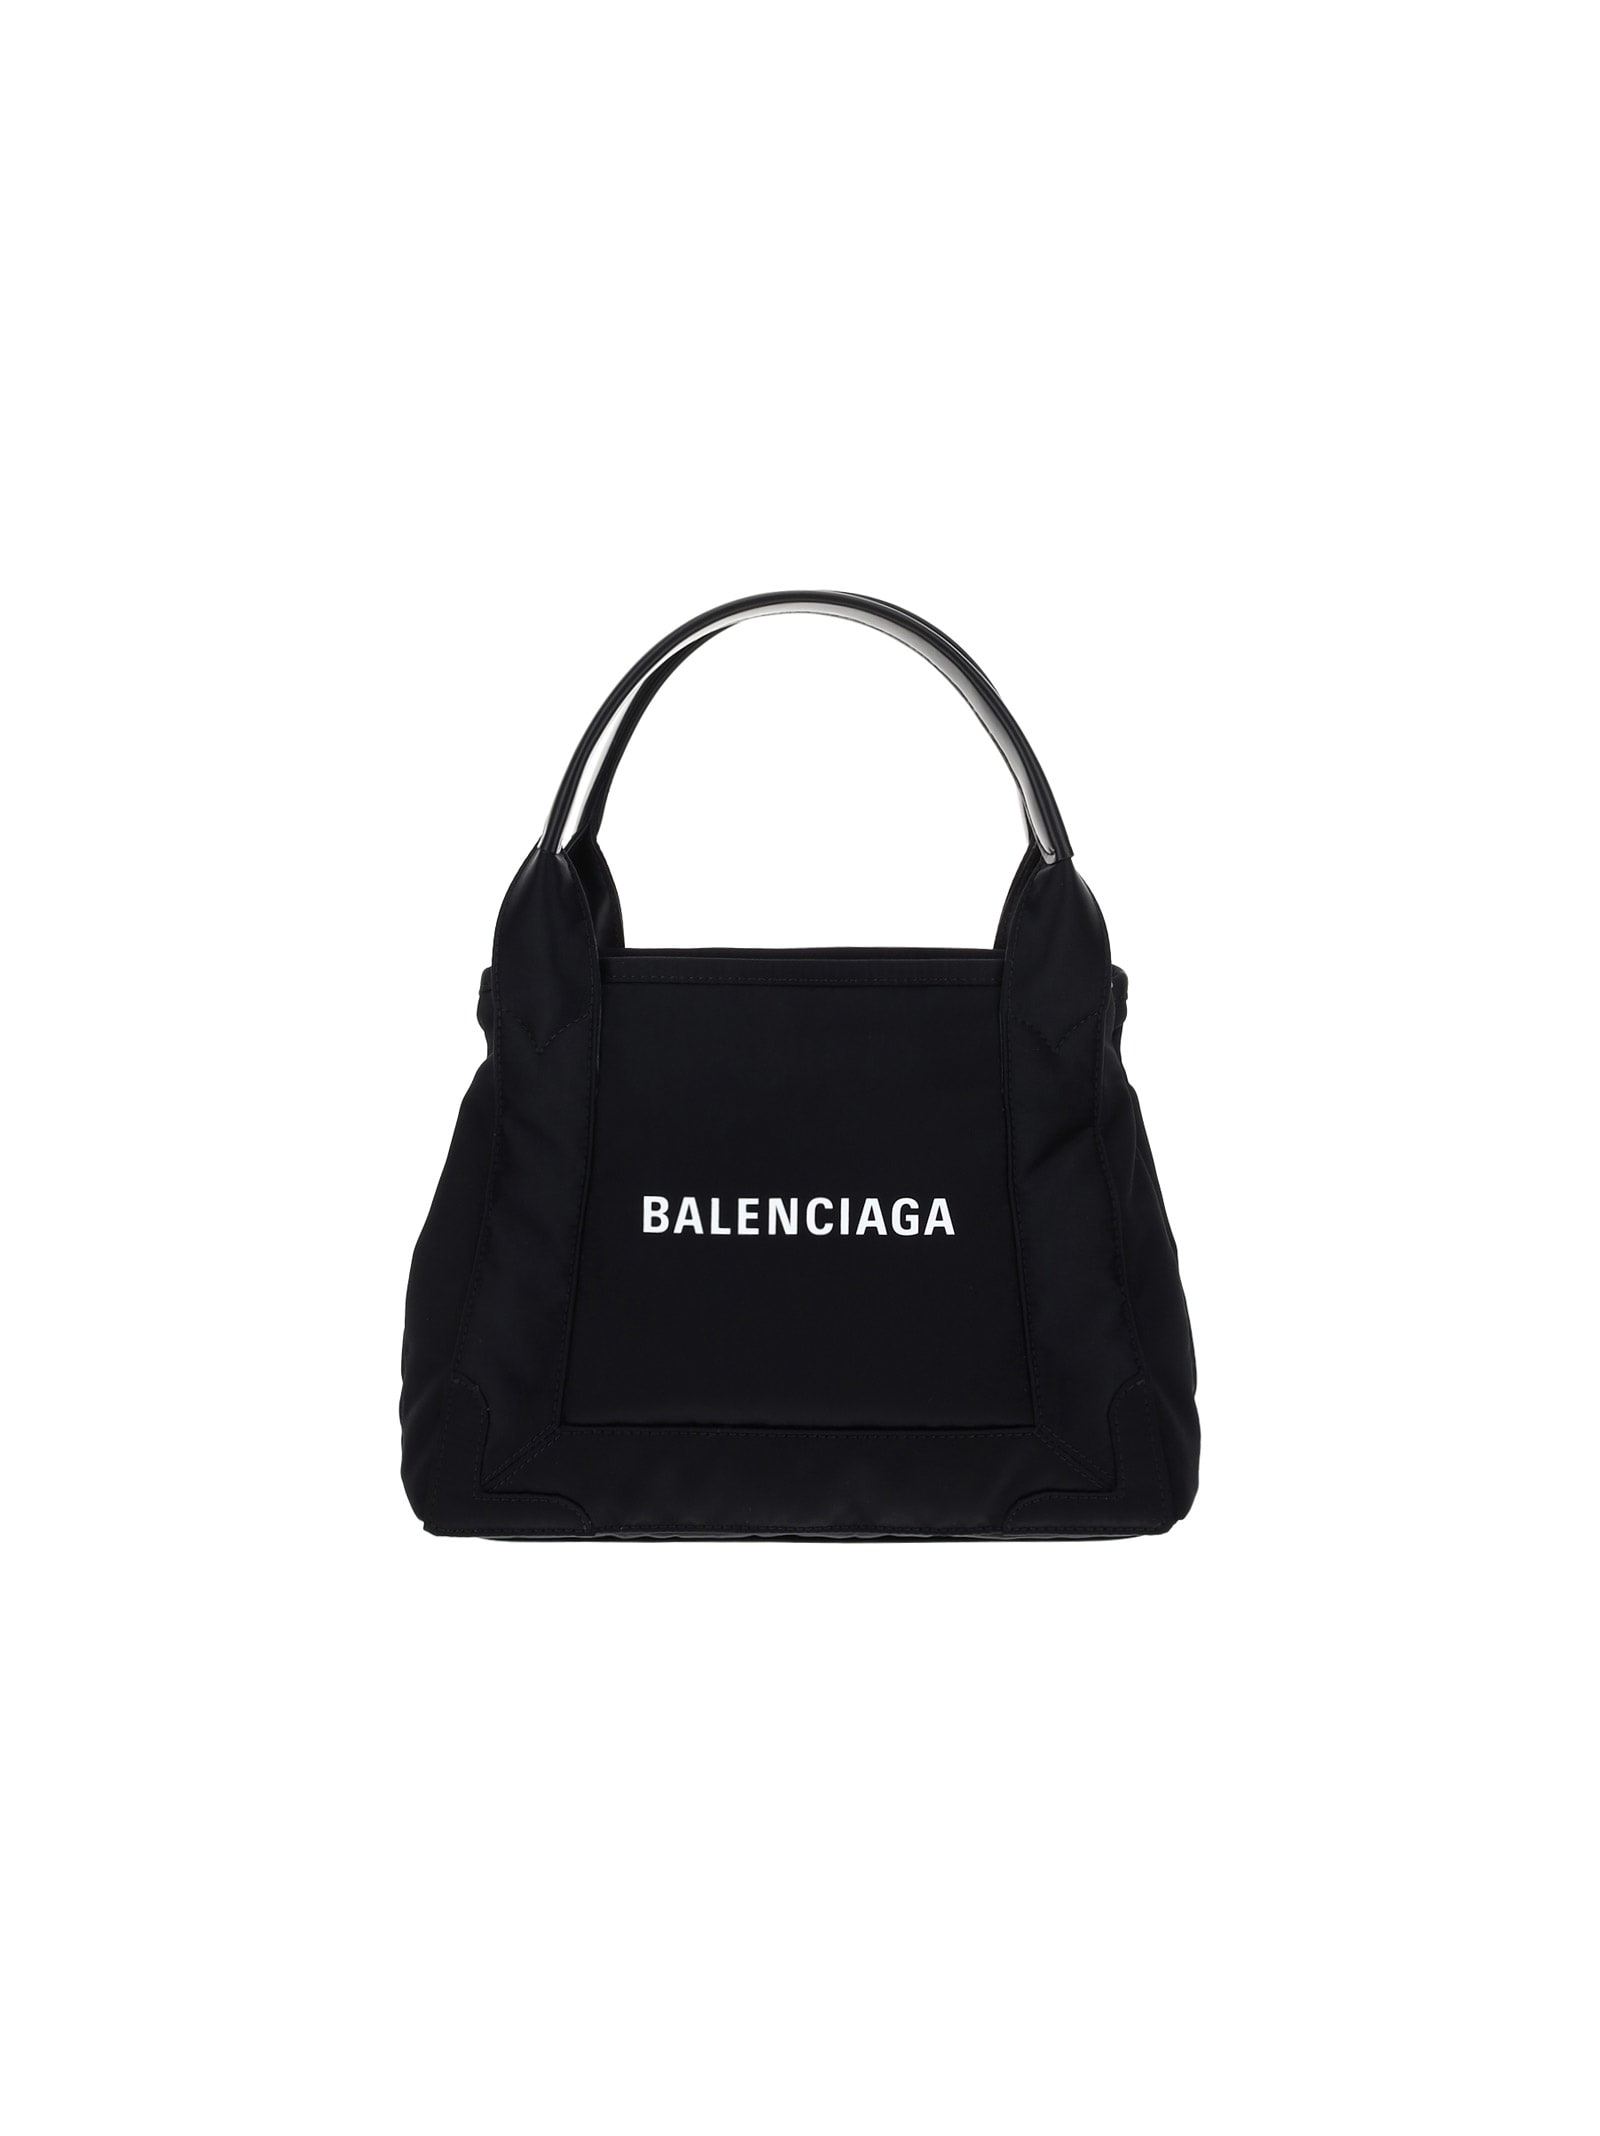 Balenciaga Cabas Handbag